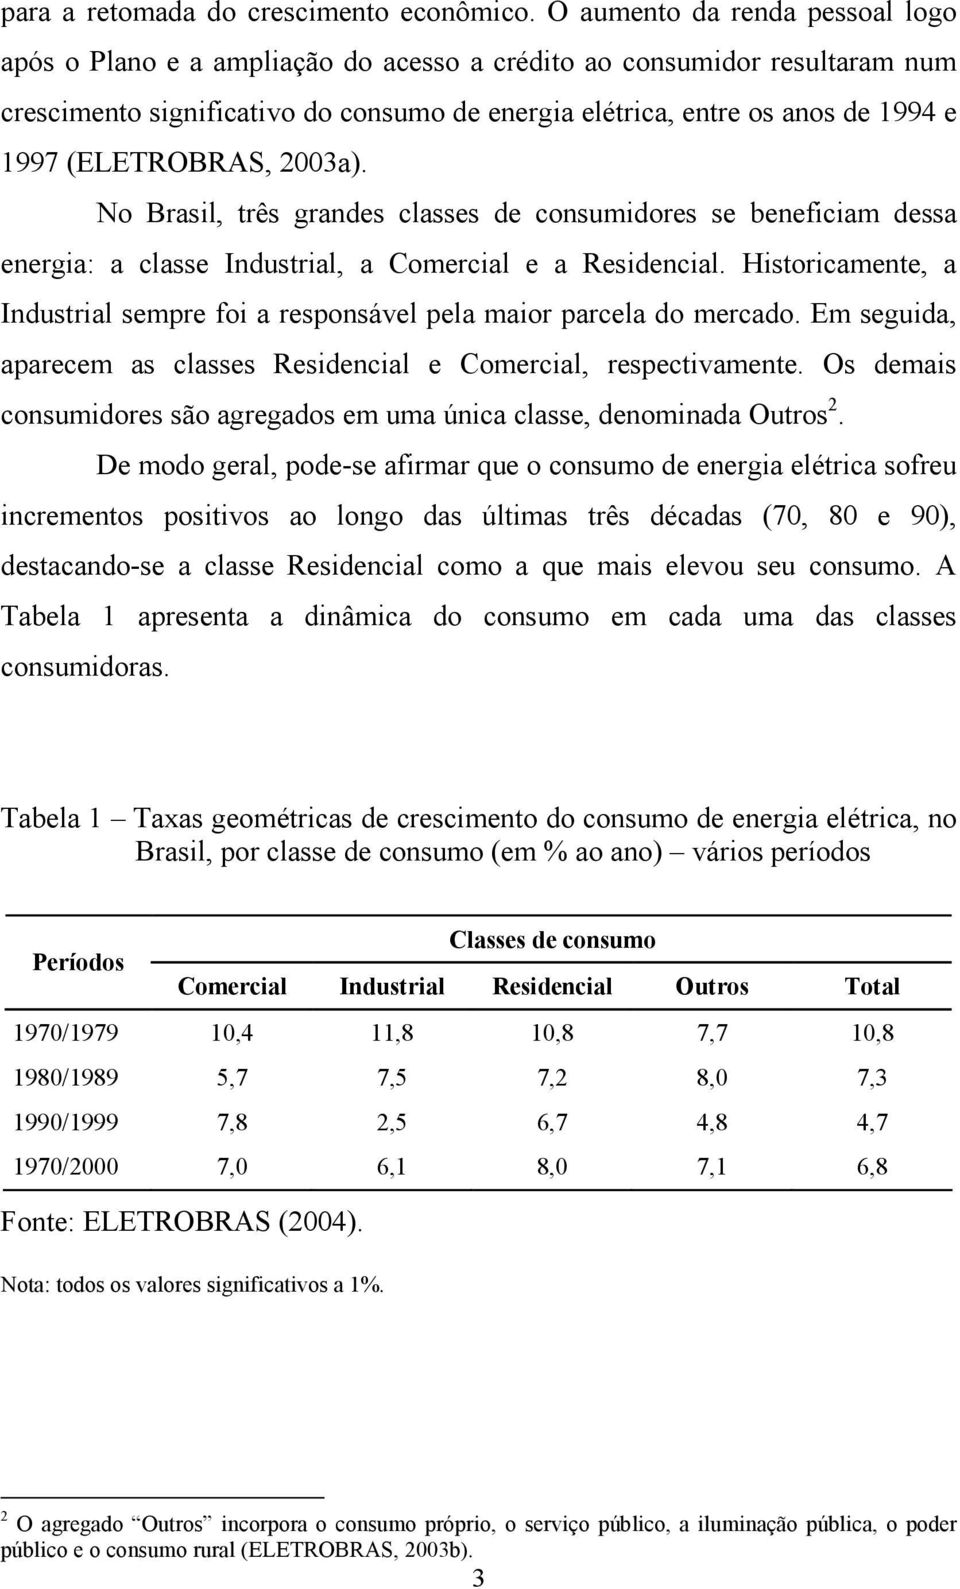 (ELETROBRAS, 2003a). No Brasil, rês grandes classes de consumidores se beneficiam dessa energia: a classe Indusrial, a Comercial e a Residencial.